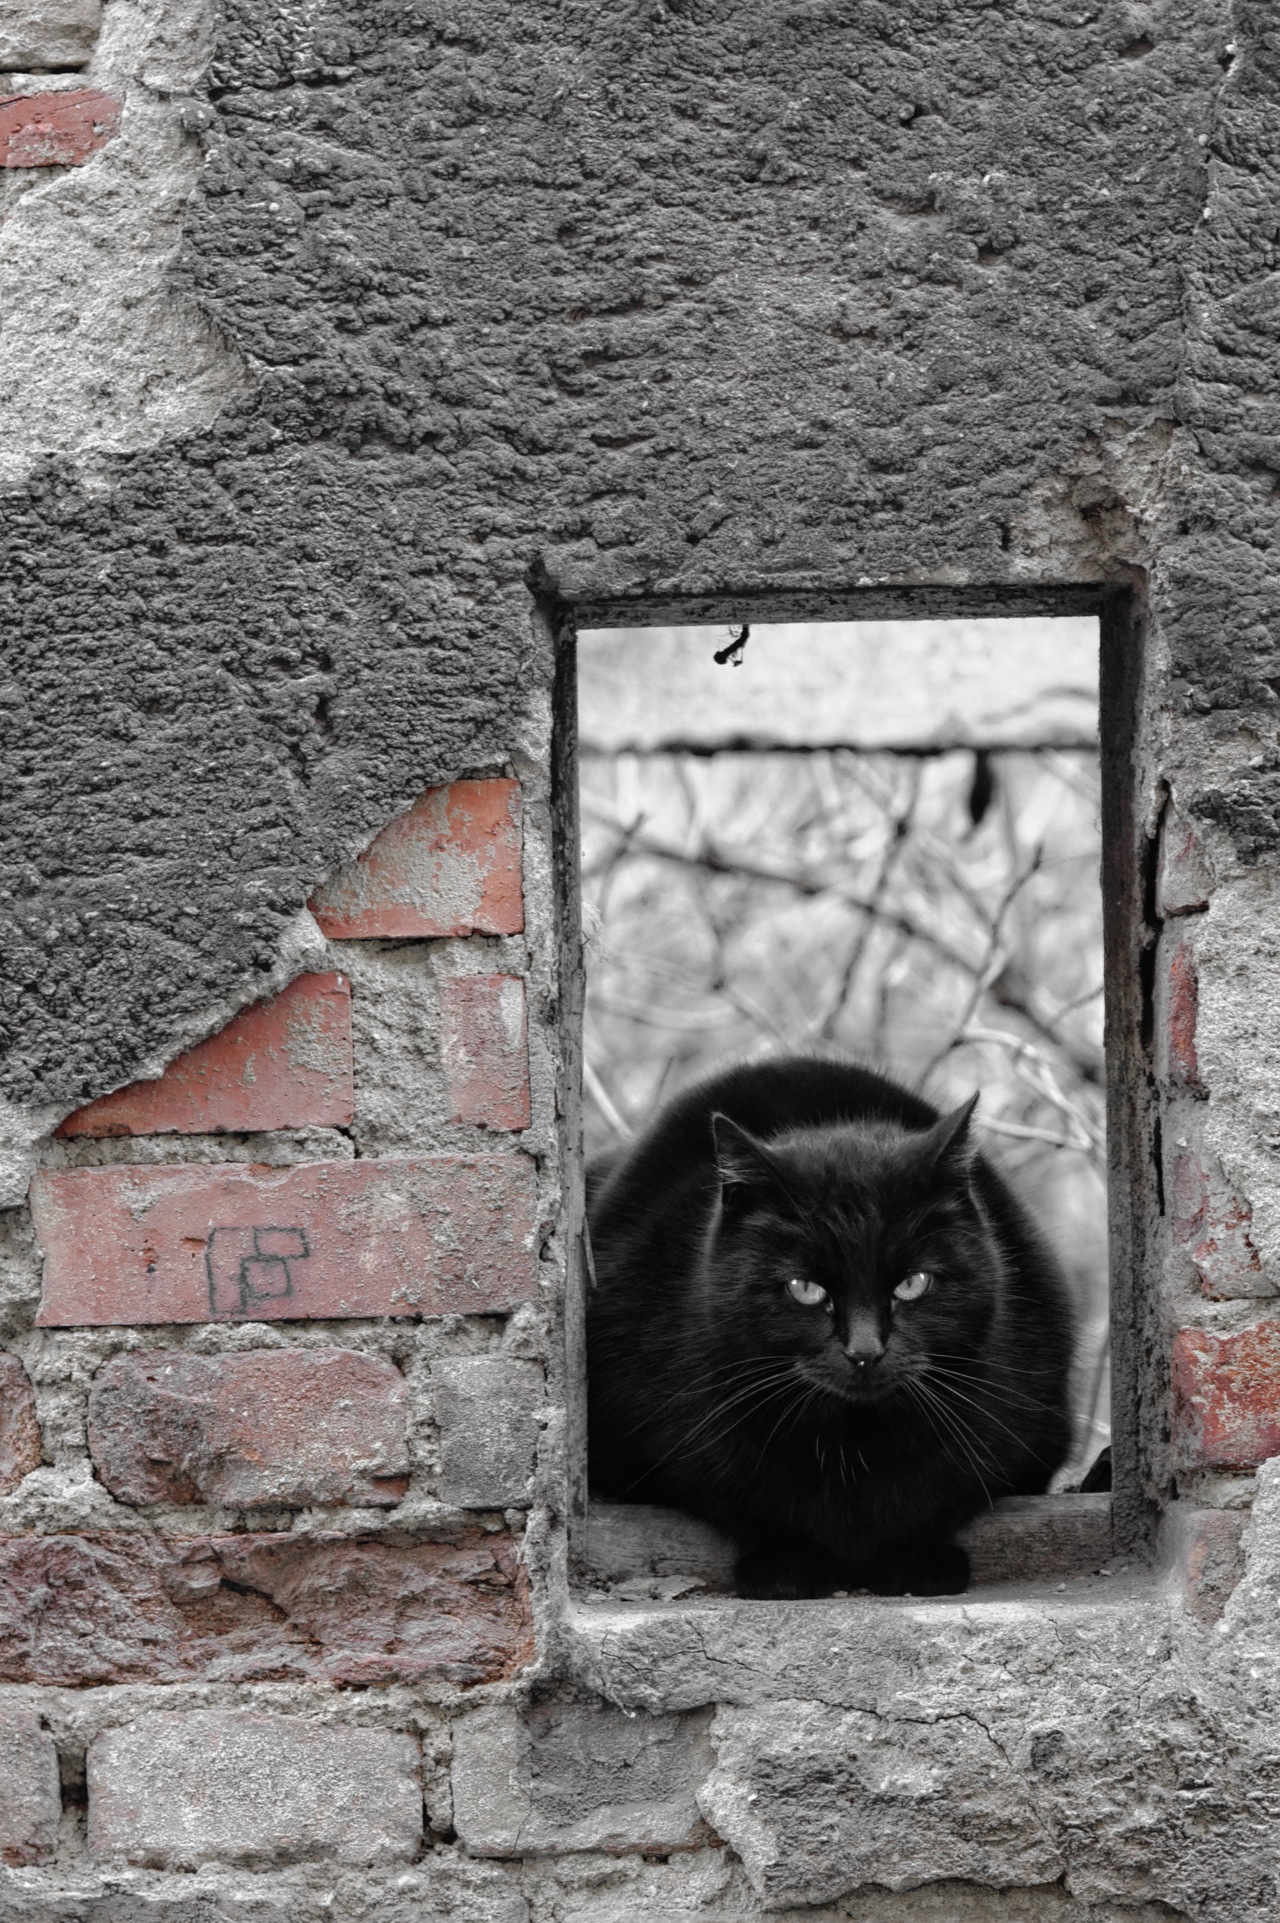 Bild: Schafstädt - Schwarze Katze im Fenster einer Bauruine auf dem Marktplatz. NIKON D700 mit AF-S NIKKOR 24-120 mm 1:4G ED VR. ISO 800 ¦ f/5,6 ¦ 120 mm ¦ 1/40 s ¦ kein Blitz. Klicken Sie auf das Bild um es zu vergrößern.